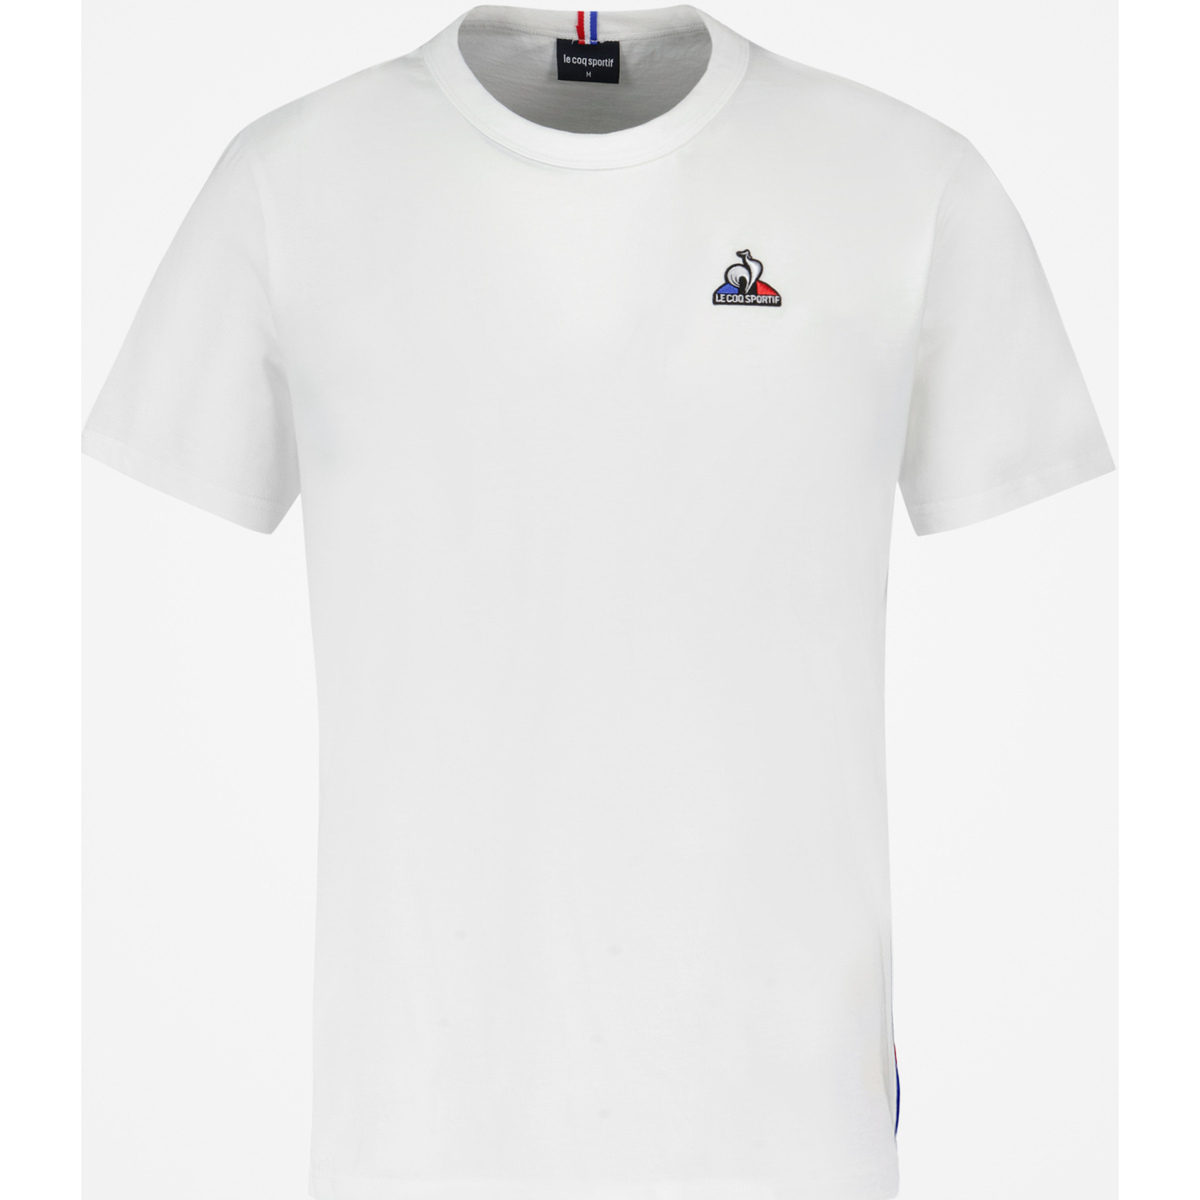 Le Coq Sportif Blanc T-shirt Unisexe Enrjg91M